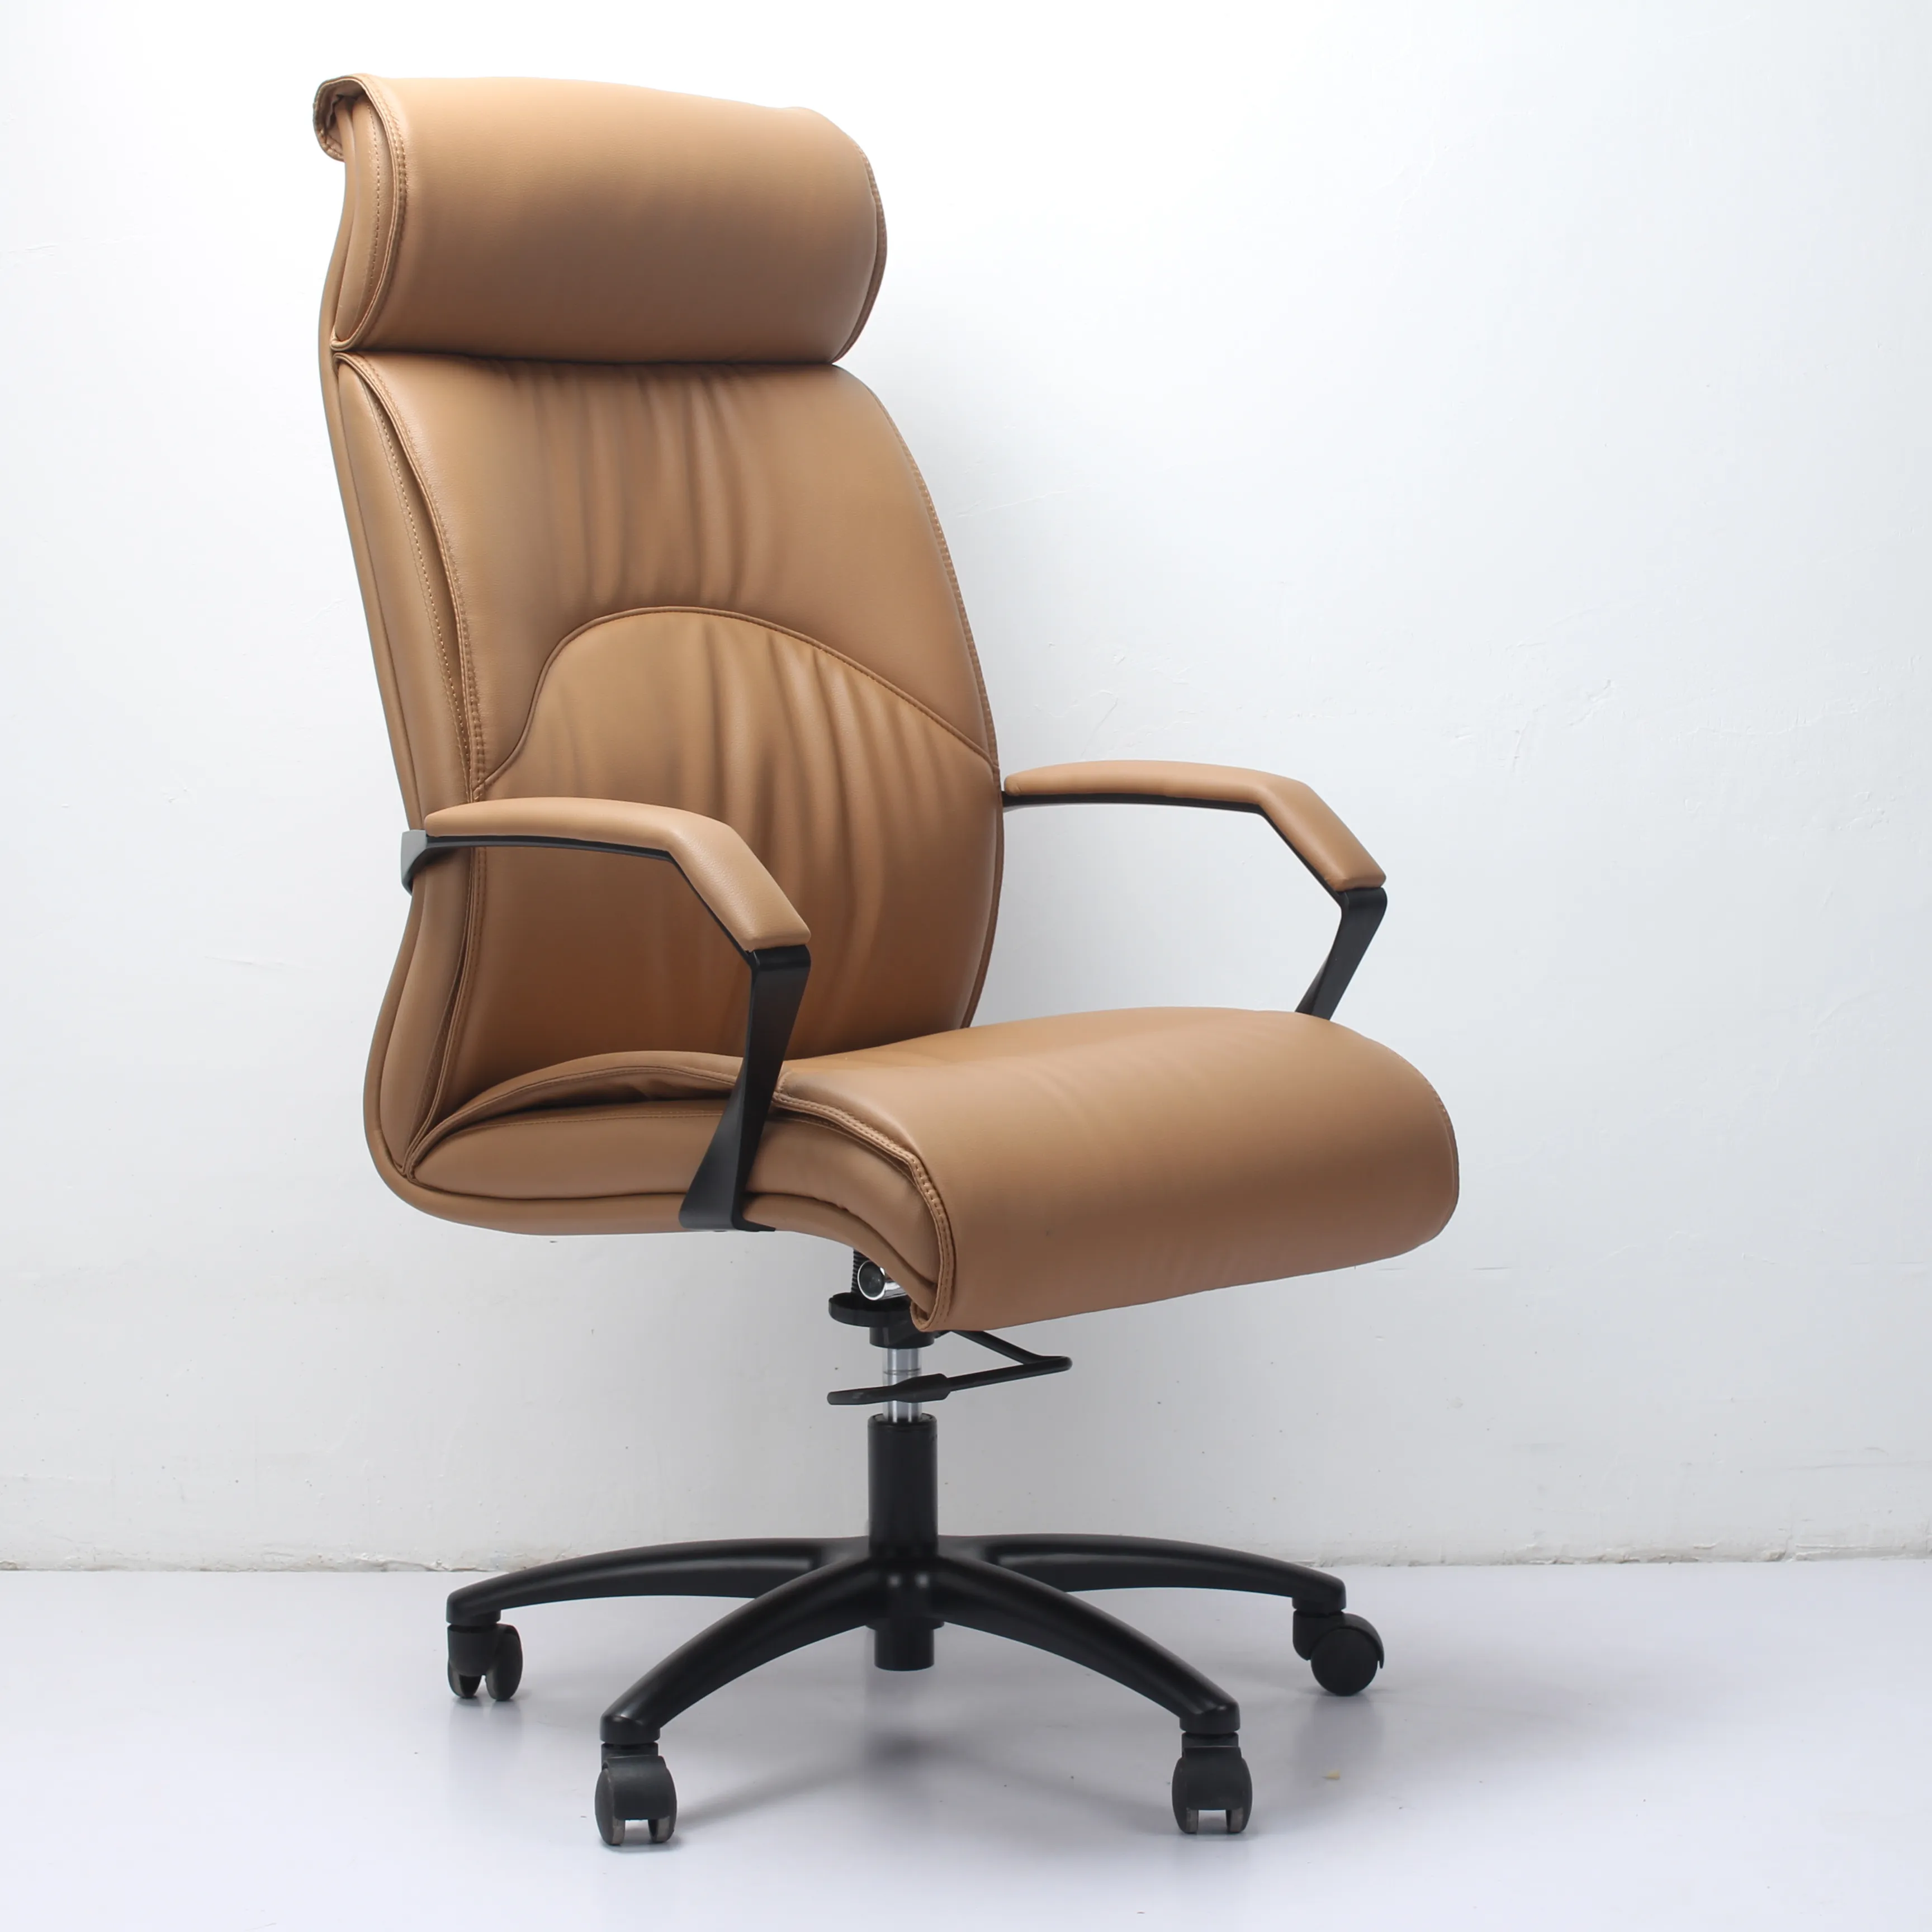 Офисный стул с высокой спинкой из коричневой искусственной кожи